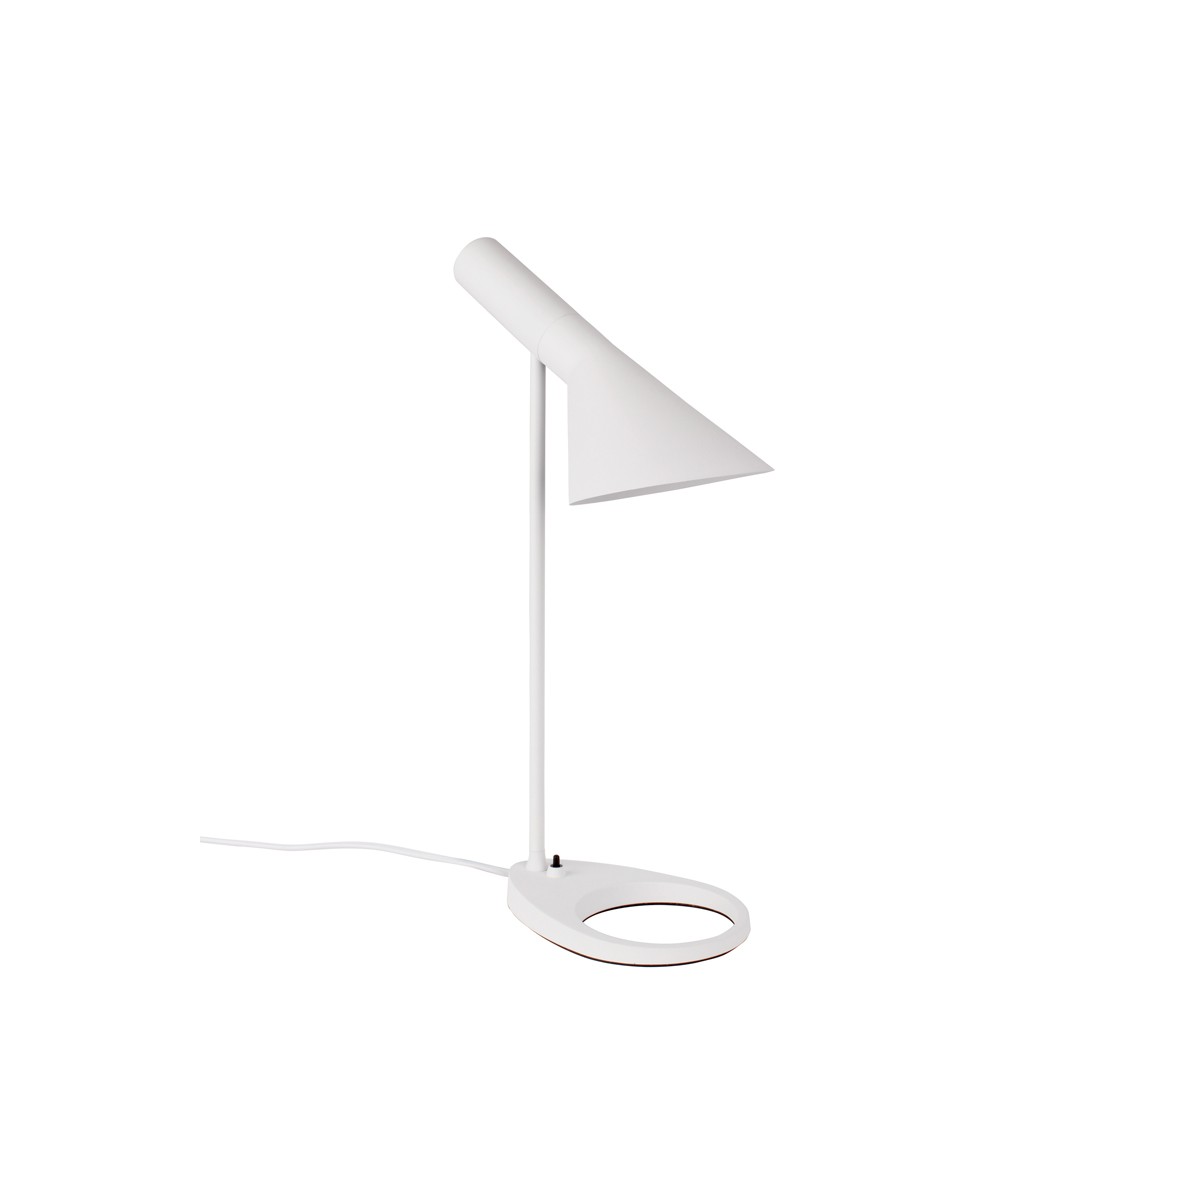 Design table lamp "Marlene"